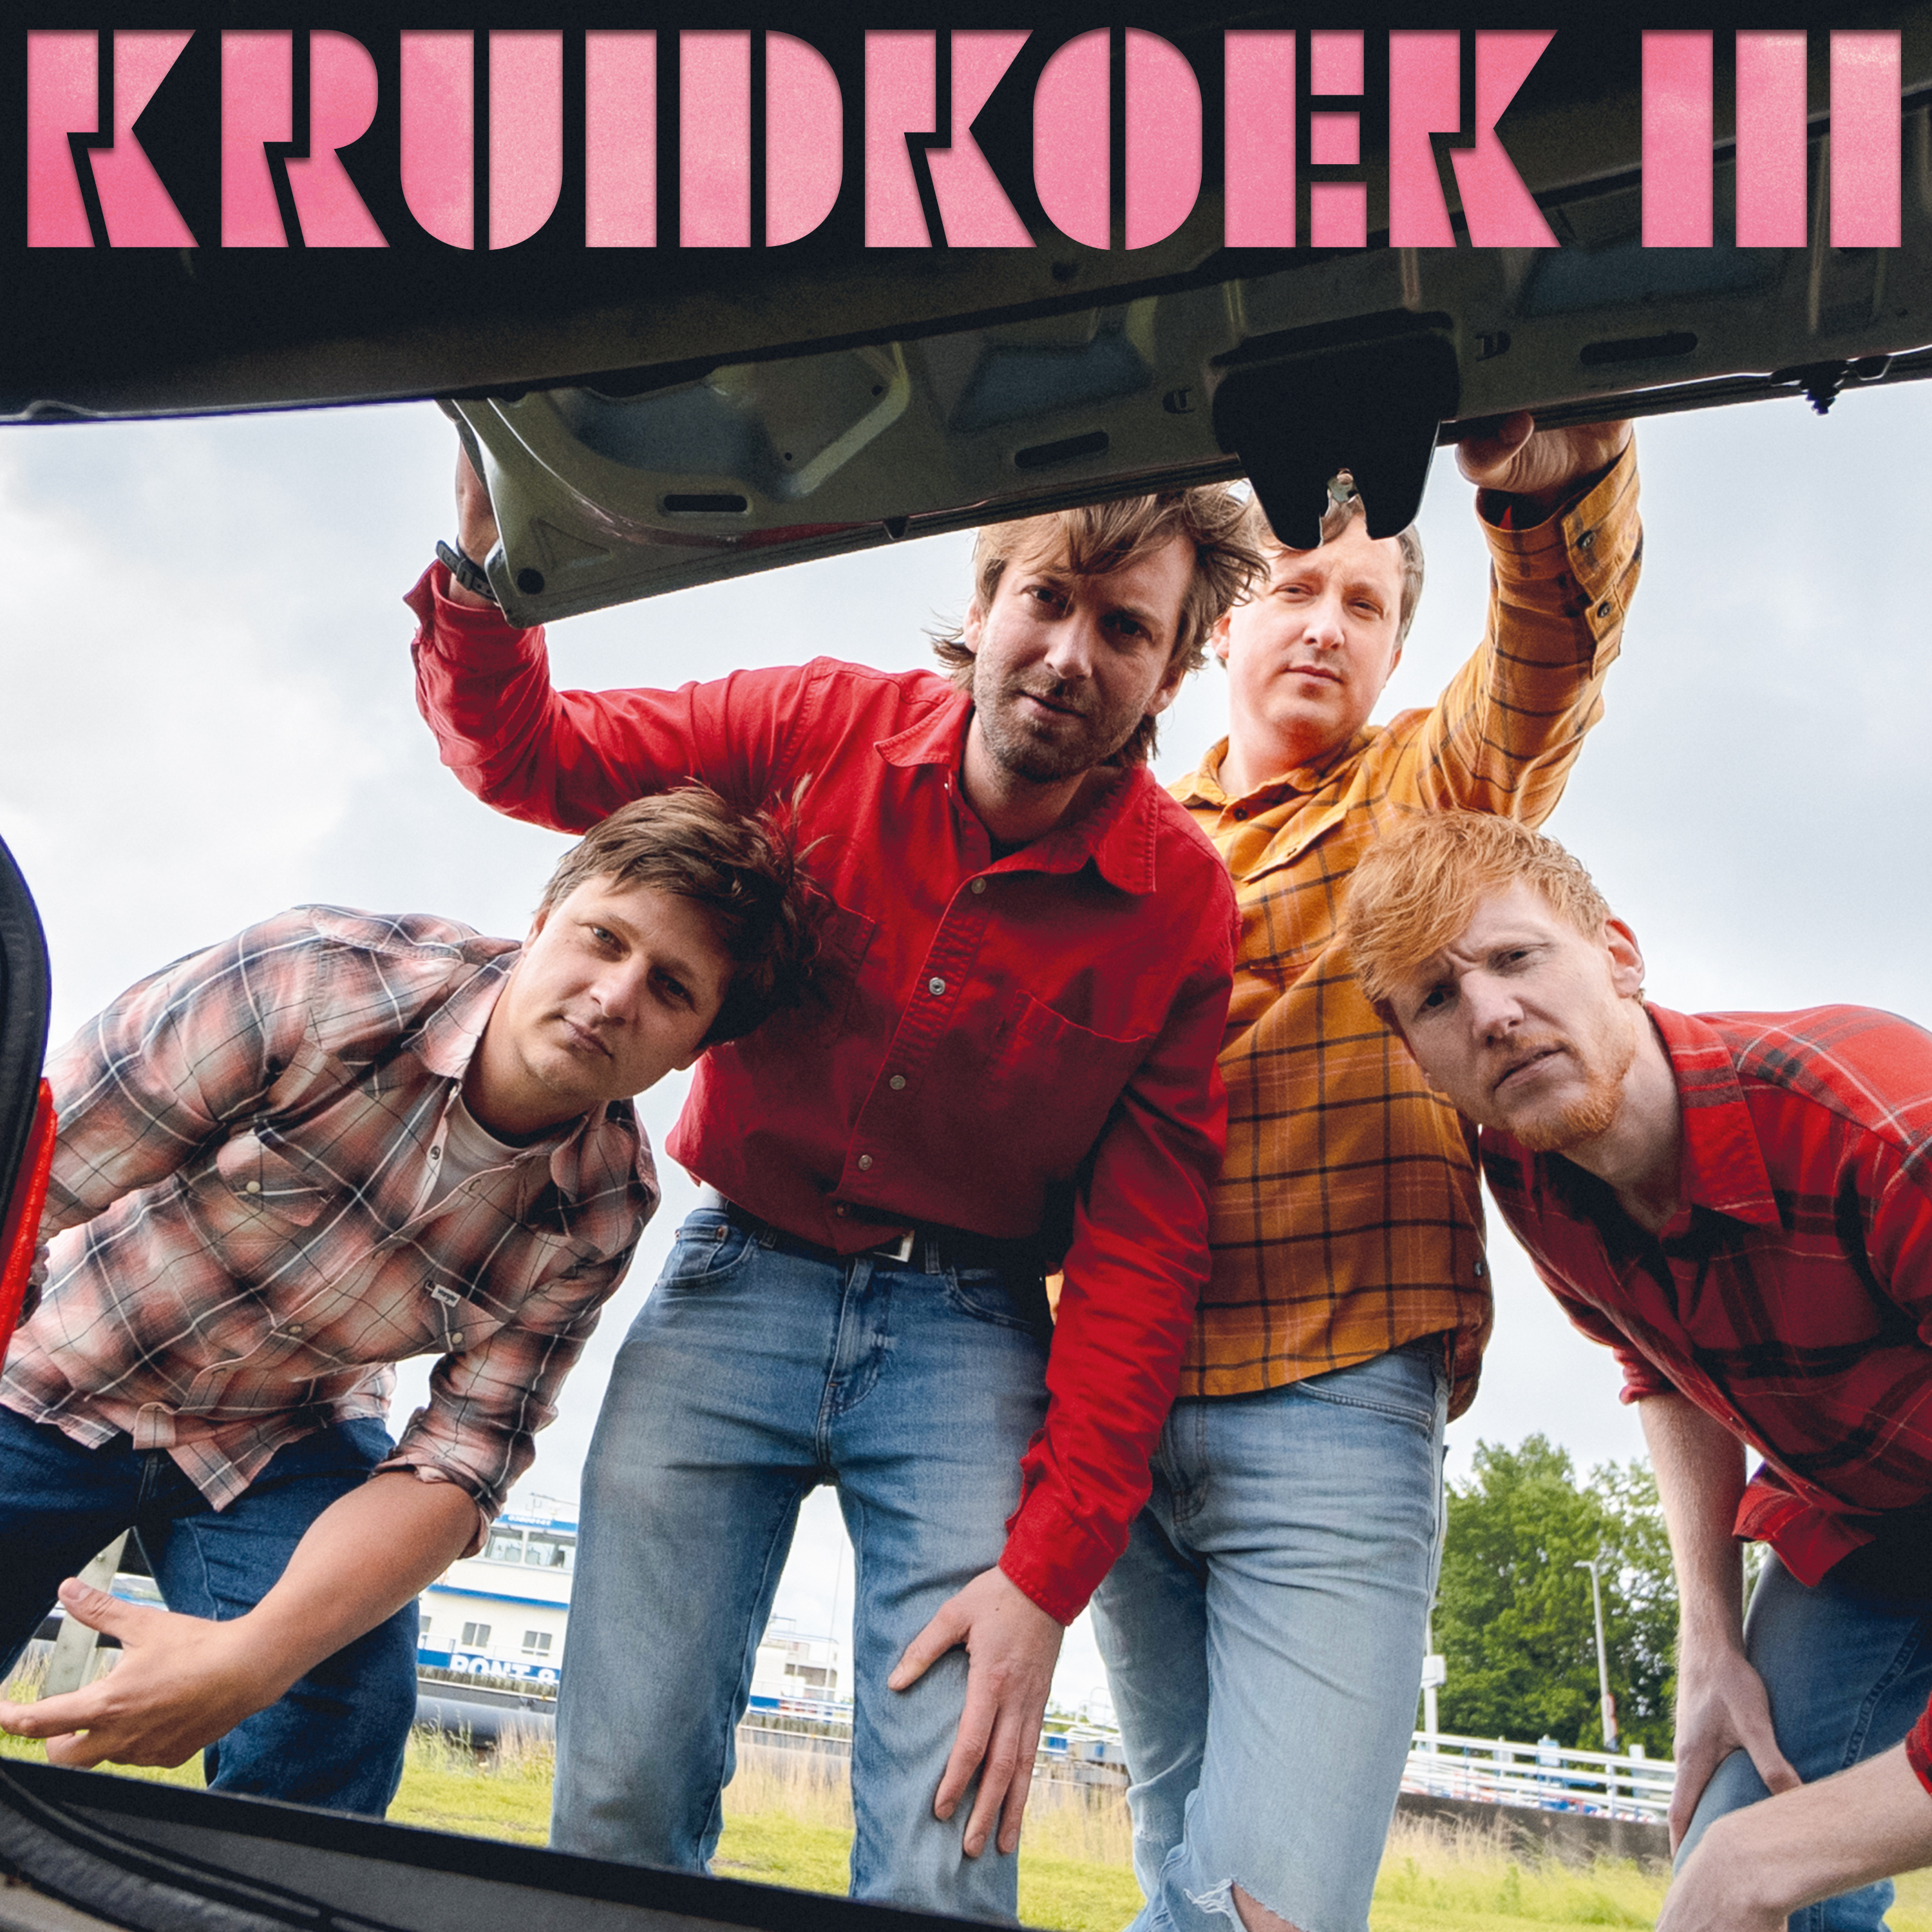 Kruidkoek III 12" Vinyl